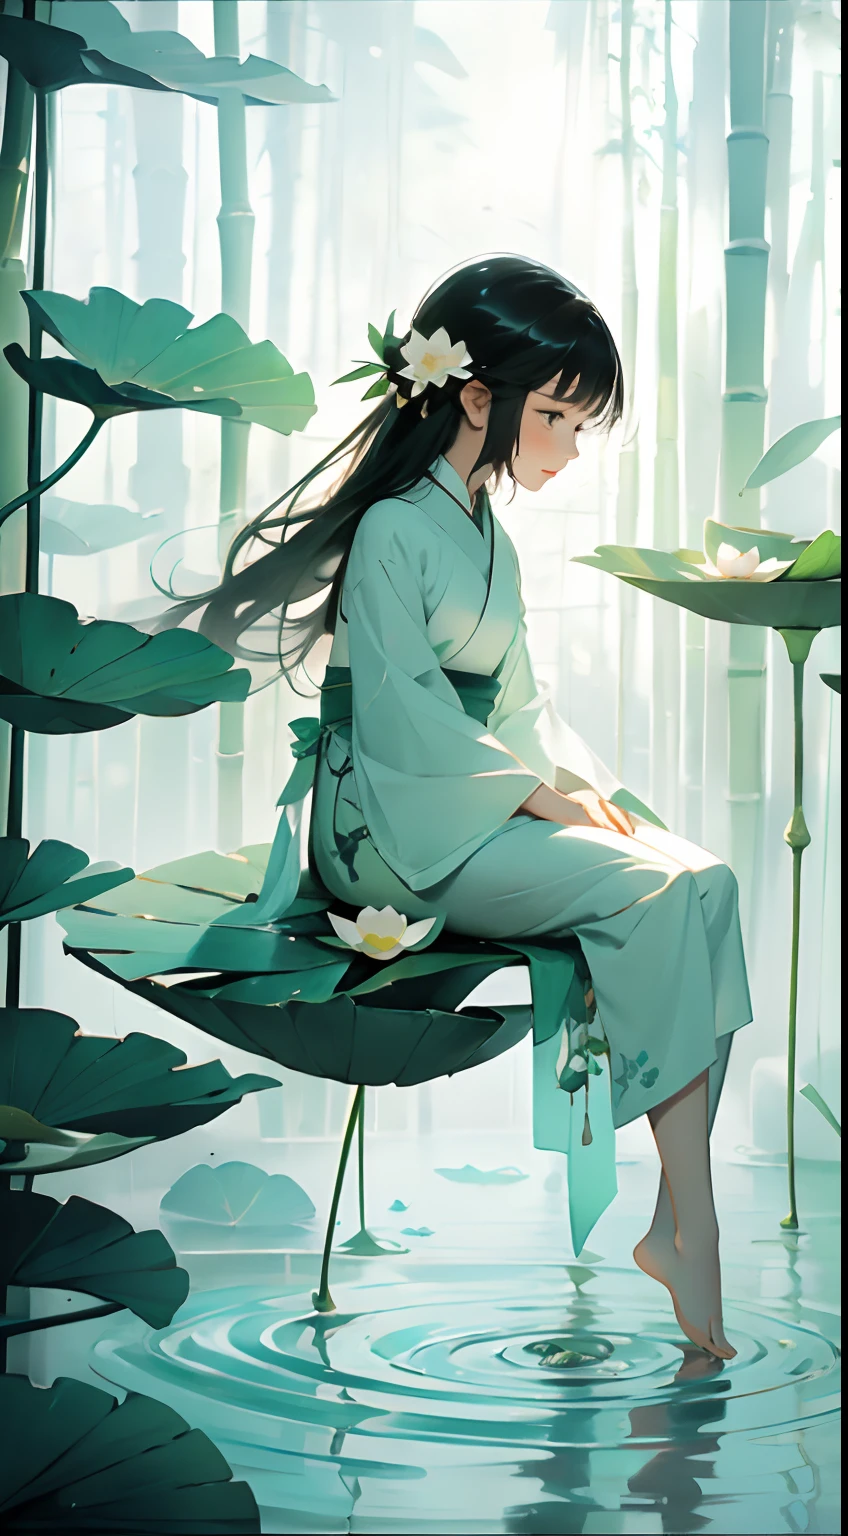 Uma vagem cheia de flores de lótus, sentado feliz nas folhas de lótus da vagem, enormes folhas de lótus, Pés descalços, vestido com hanfu branco e verde, luz e sombra, Uma obra-prima